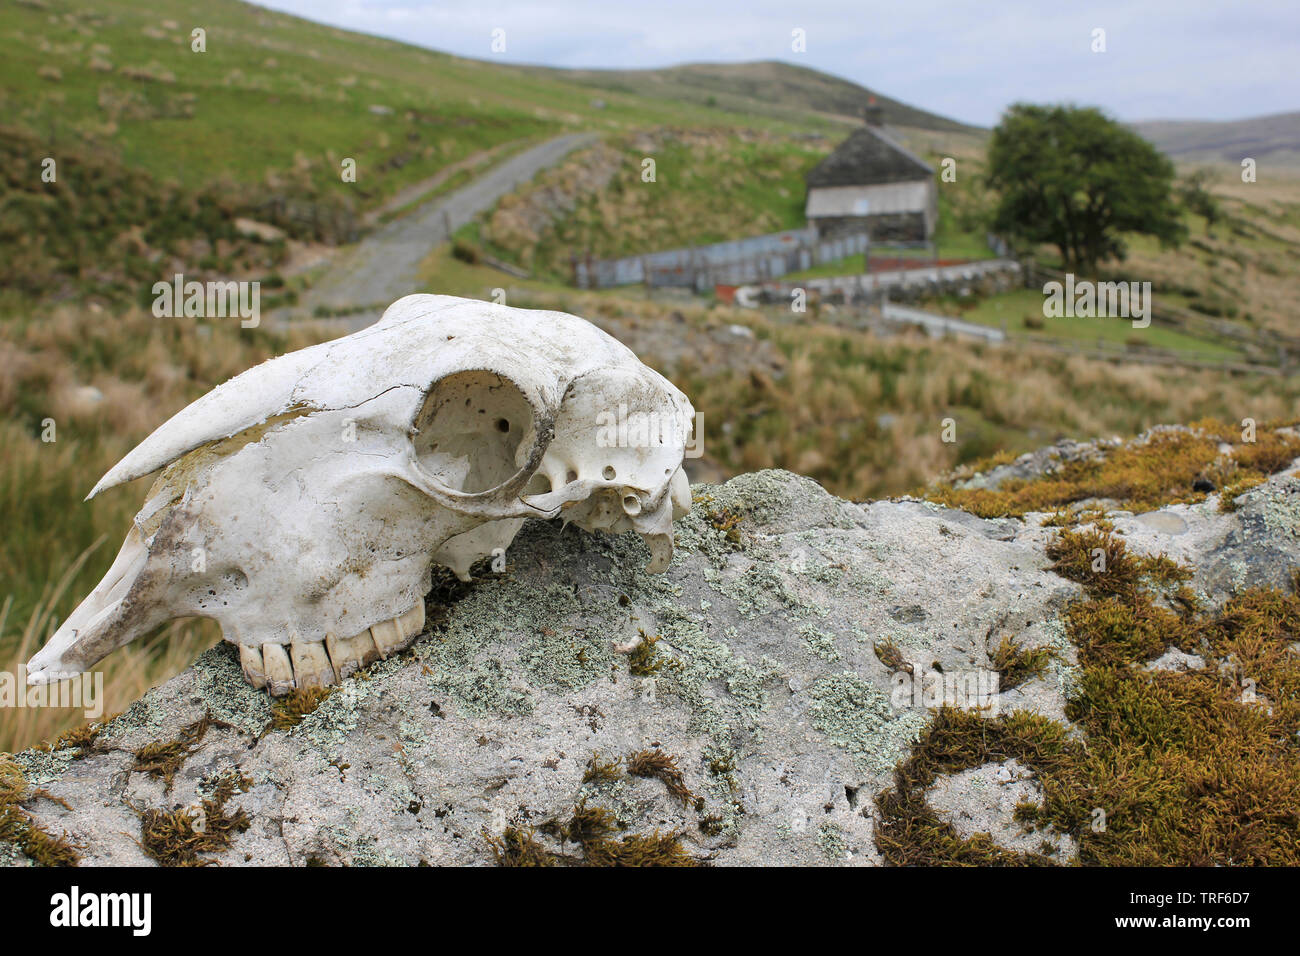 Schafe Schädel auf einem Felsen neben einem Bauernhof im Migneint-Arenig - dduallt Besonderes Schutzgebiet, Snowdonia, Wales Stockfoto